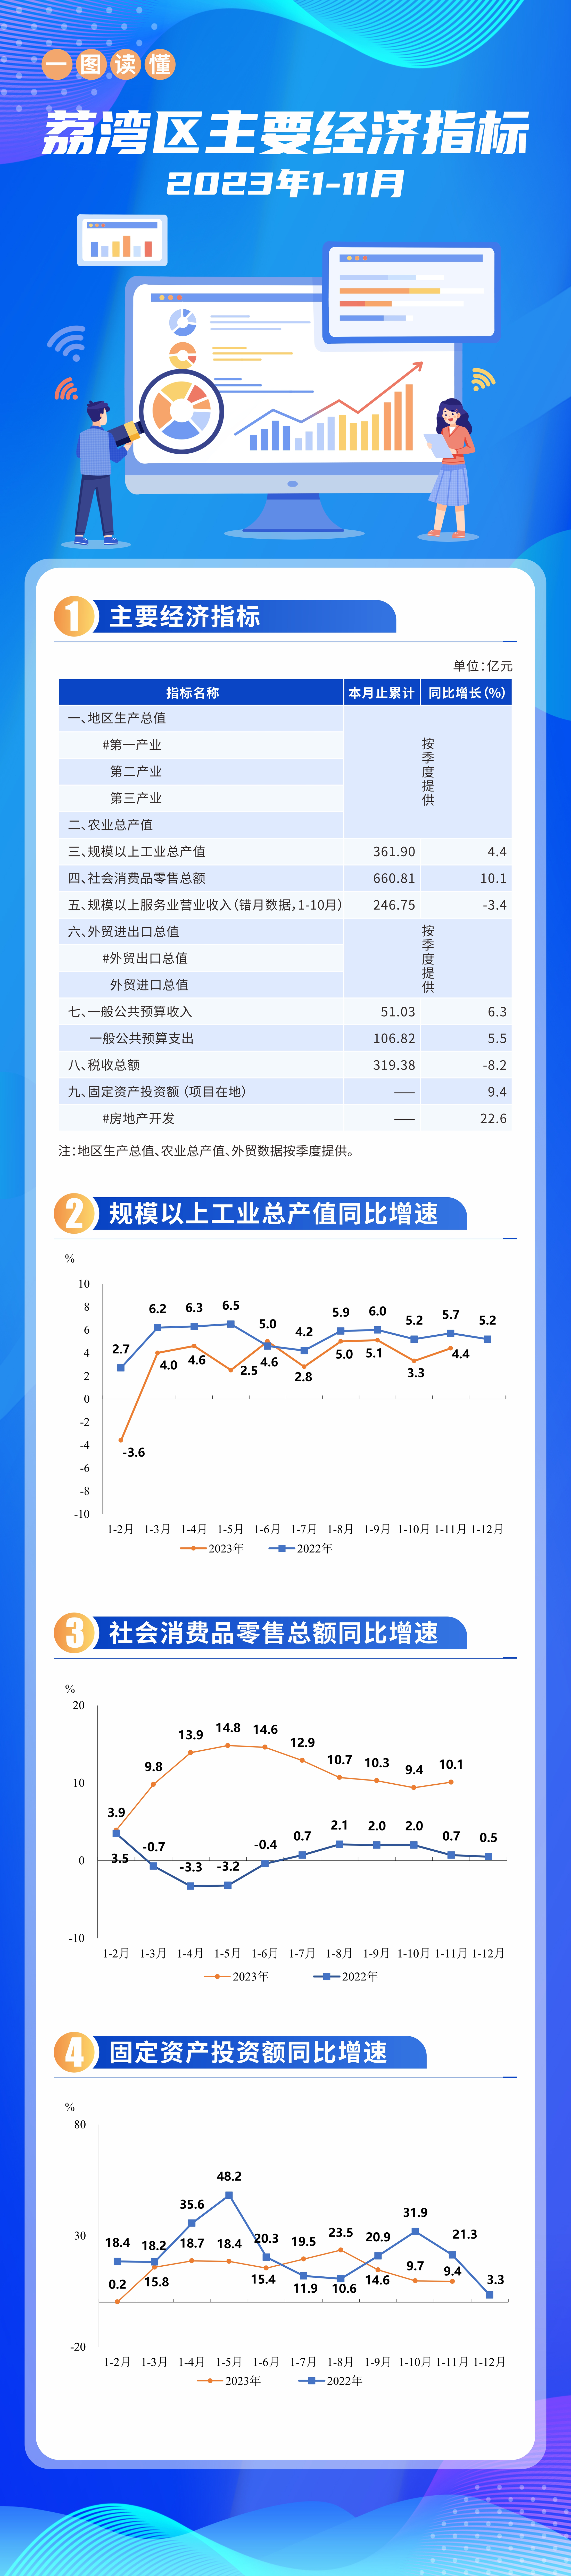 2023年1-11月荔湾区主要经济指标挂网版(1)(1).jpg